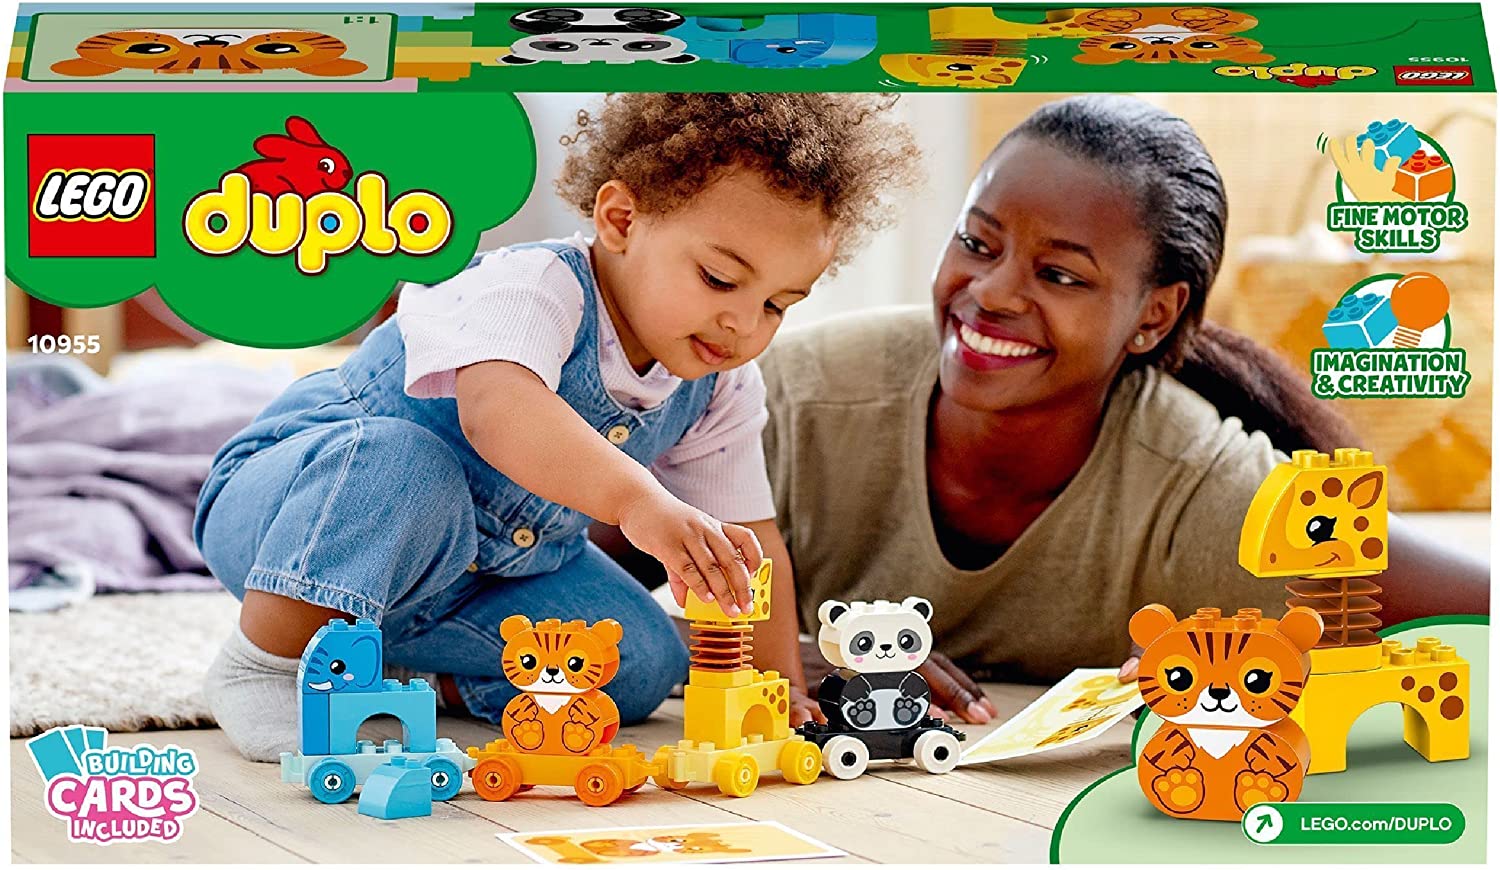 LEGO 10955 DUPLO My First Djurtåg Byggsats med Leksakståg, Leksaksdjur för Små Barn, Byggklossar